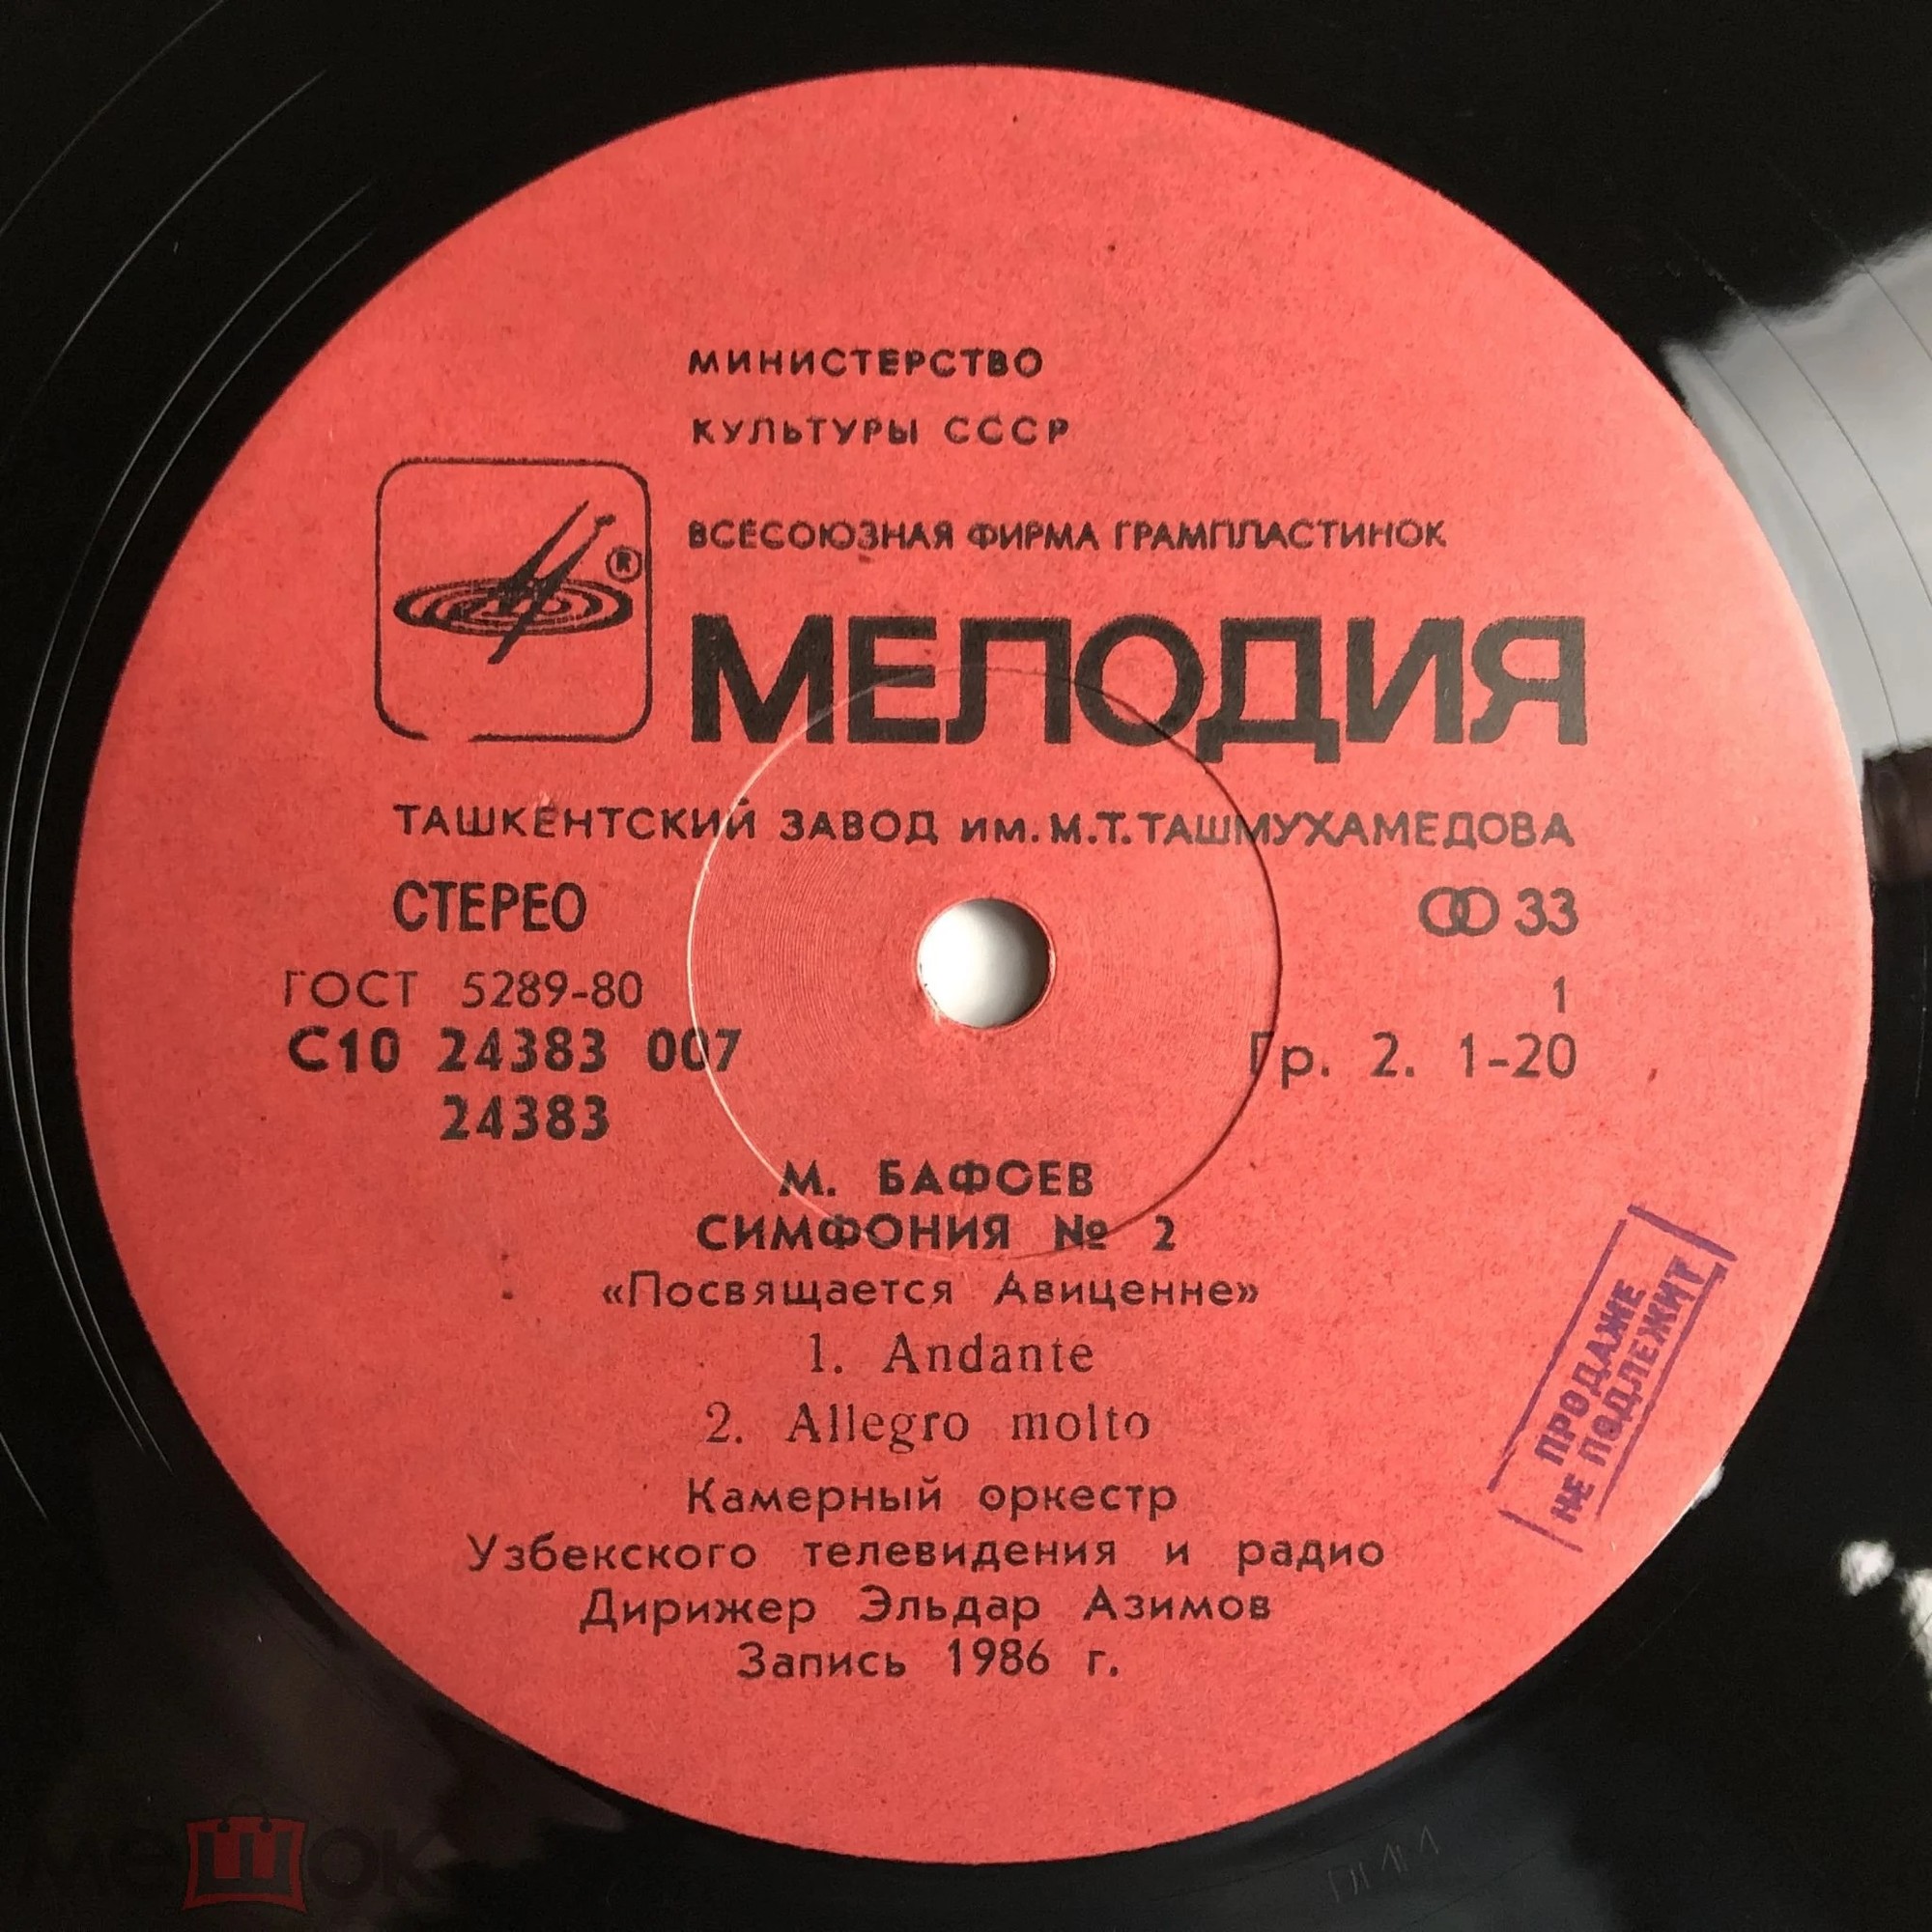 М. БАФОЕВ (1946) - Симфония №2